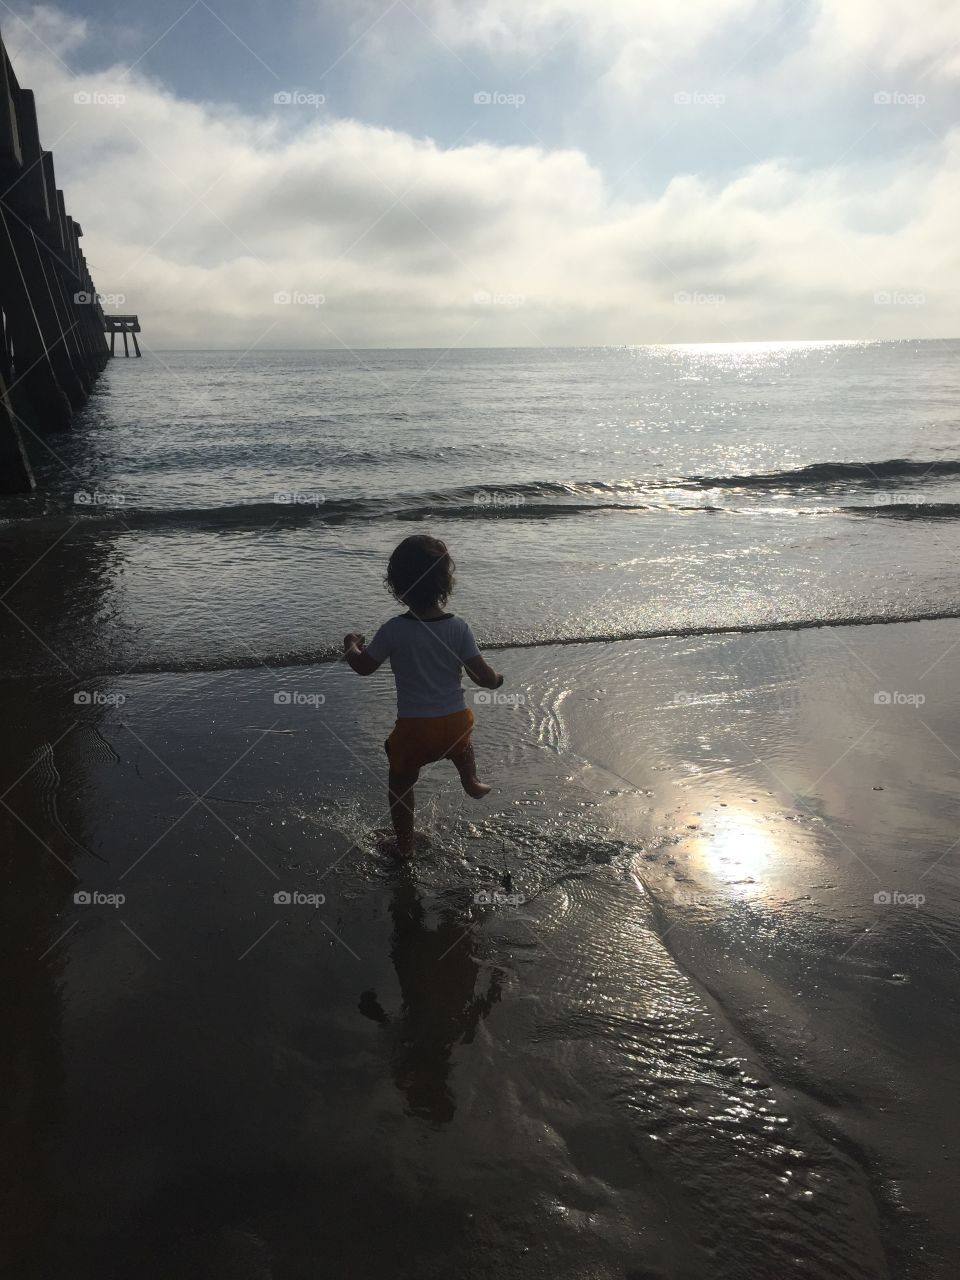 Brody dancing by the ocean